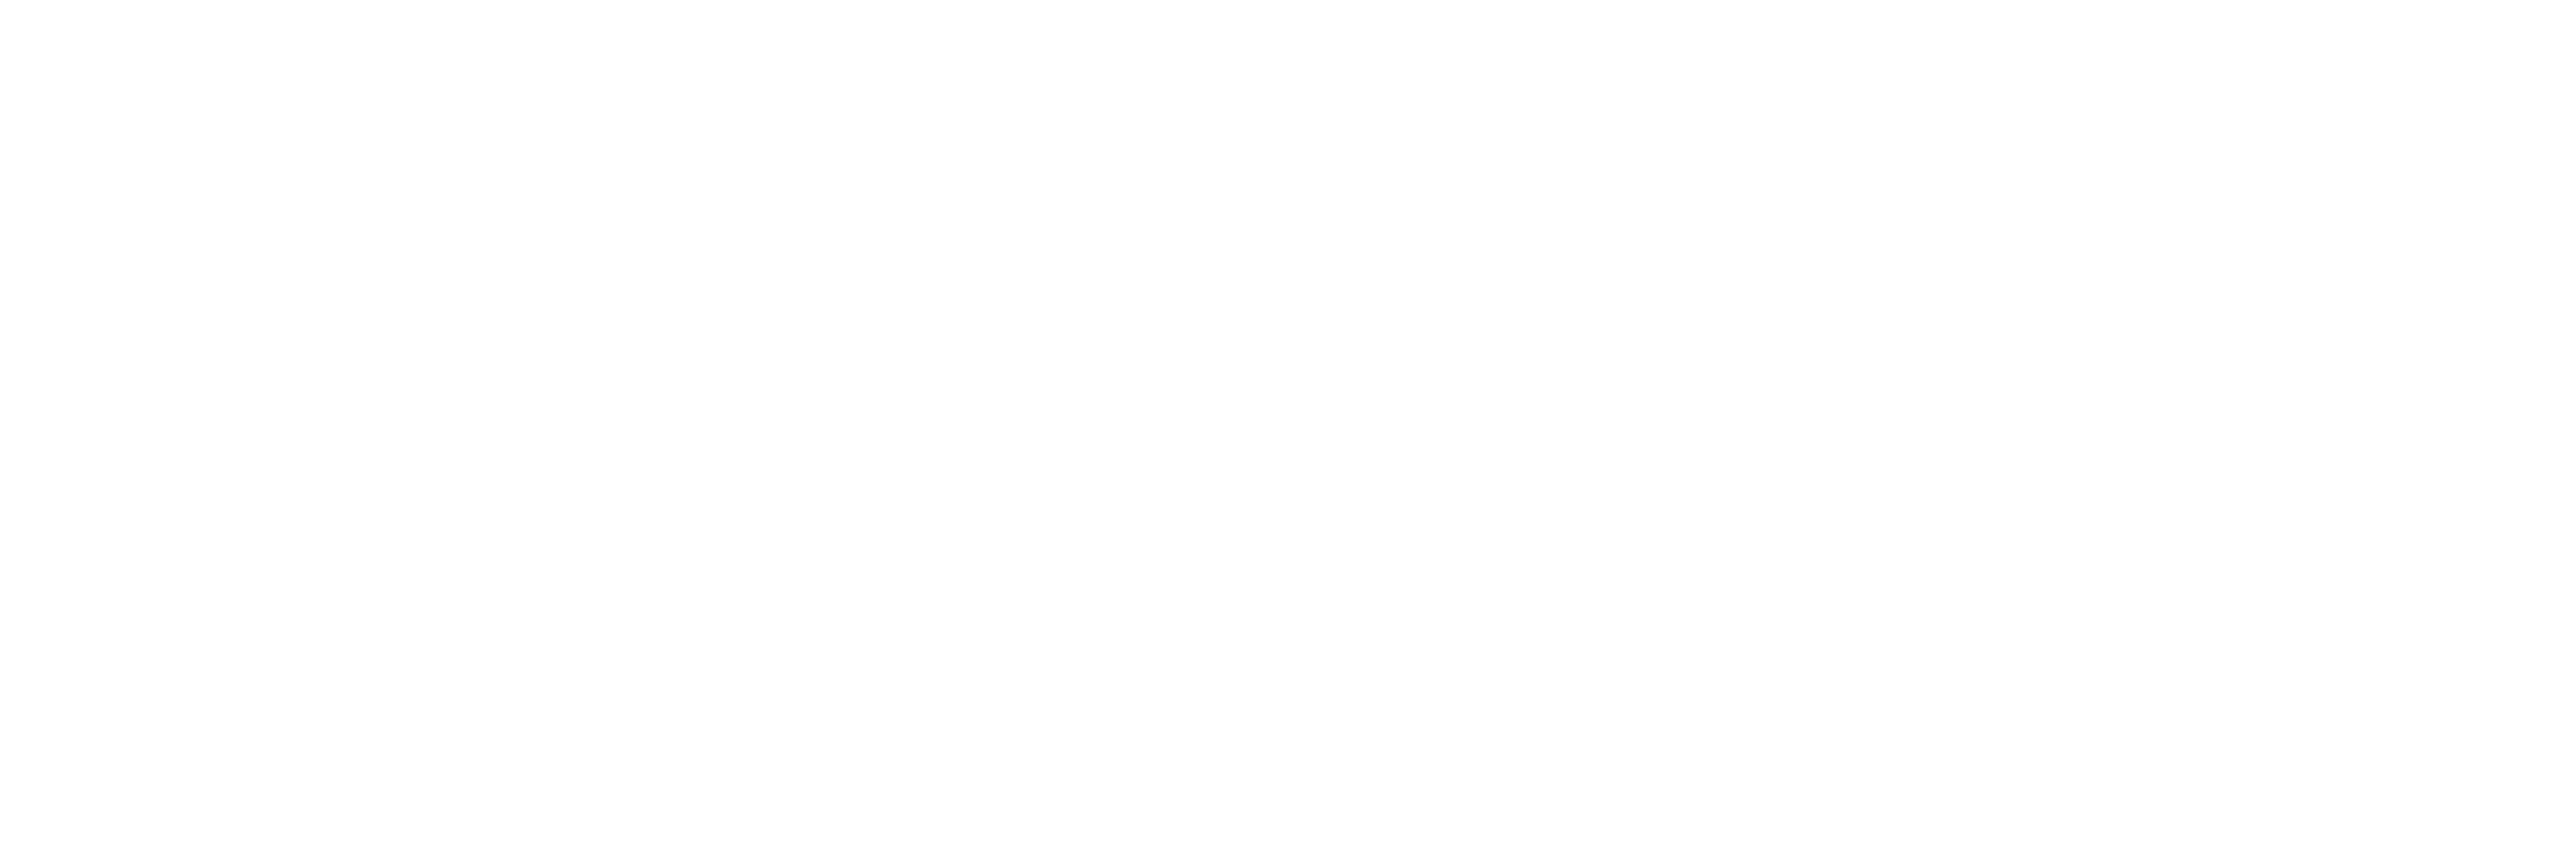 TAKAYUKI ISHIKAWA 石川 貴之